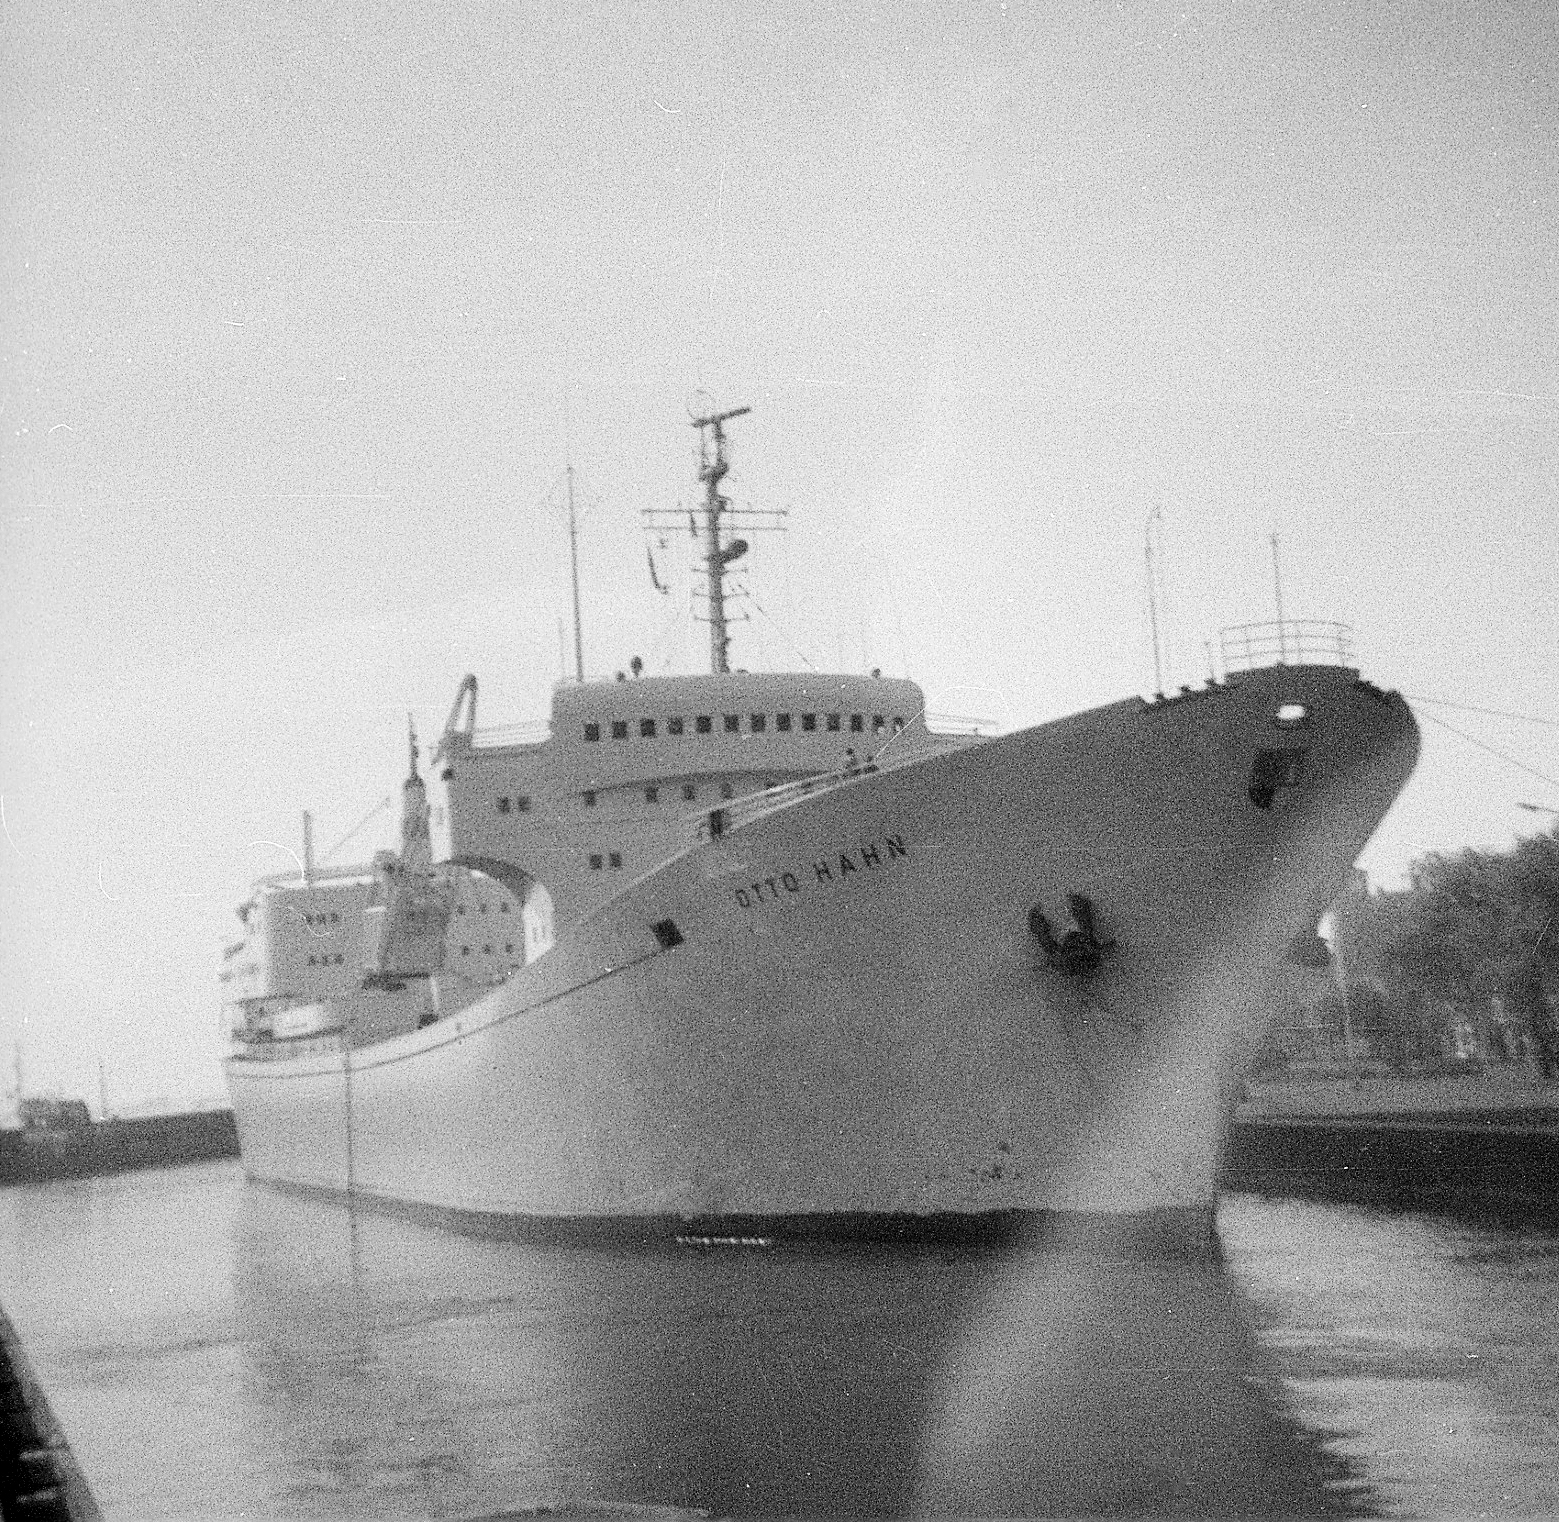 Foto von dem Atomschiff Otto Hahn in Emden. Foto: Erwin Thomasius.